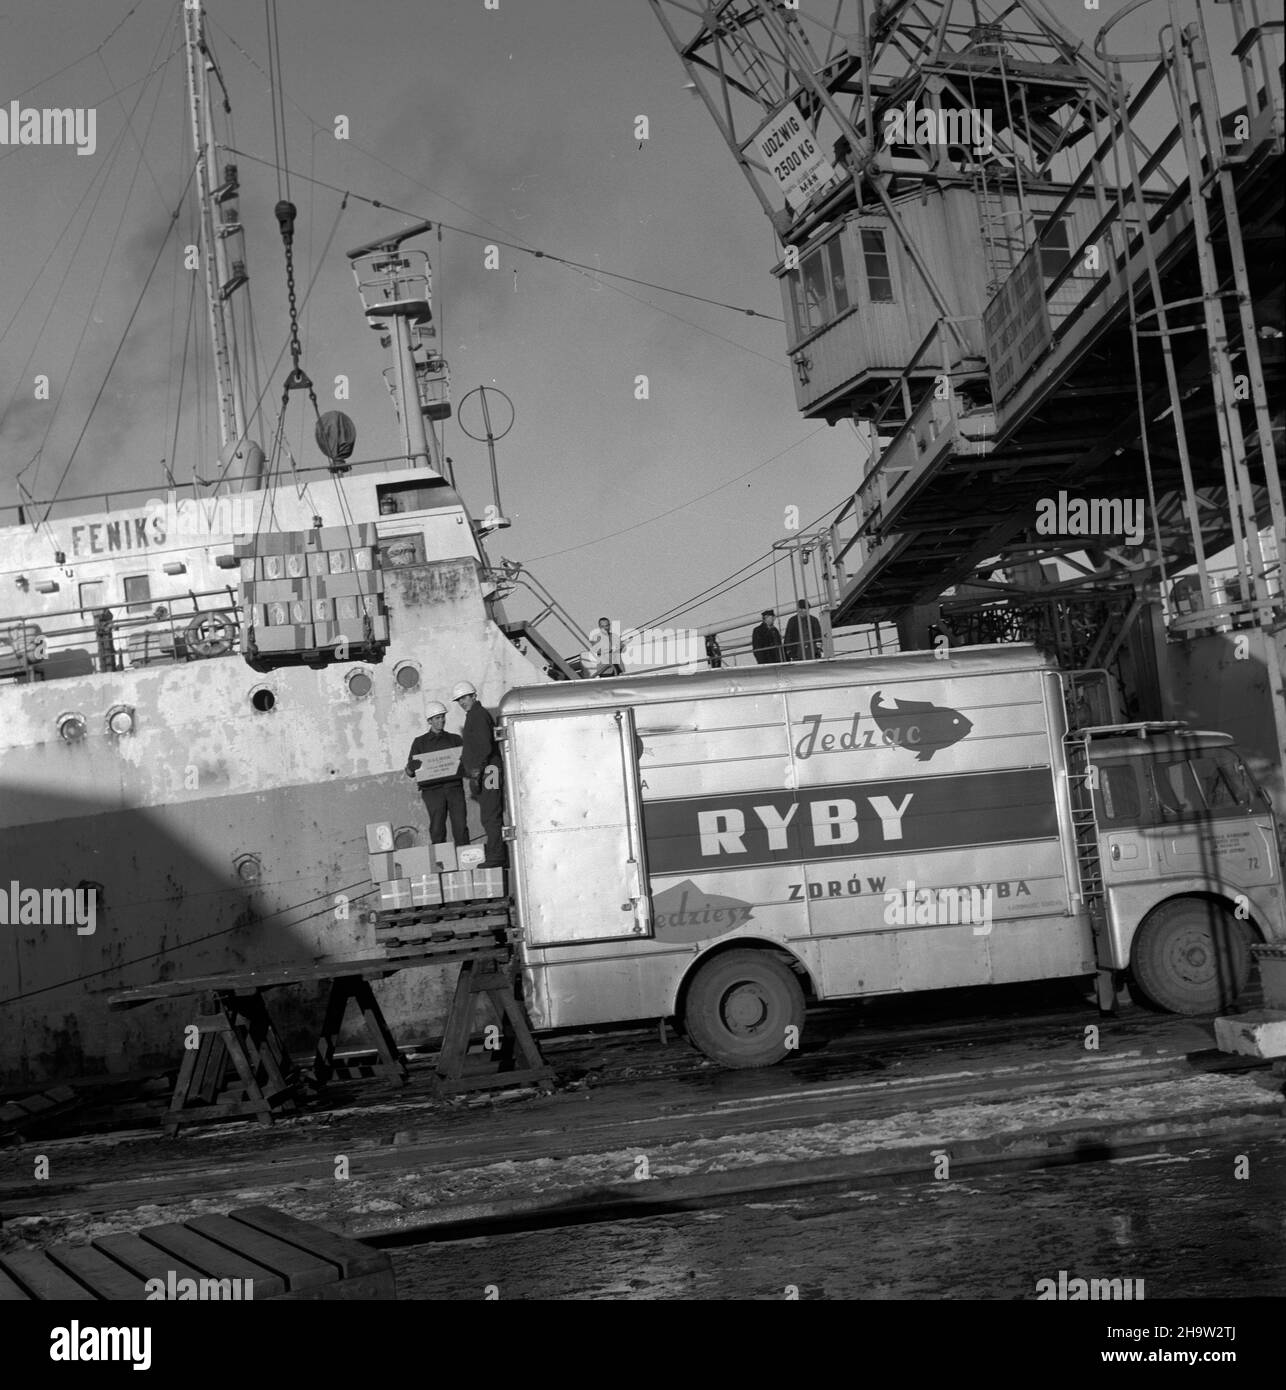 Gdynia, 1969-12. M/S Feniks, frachtowiec przedsiêbiorstwa DALMOR podczas wy³adunku ryb pochodz¹cych z Morza Barentsa. kw  PAP/Janusz Uklejewski  Dok³adny dzieñ wydarzenia nieustalony.      Gdynia, Dec. 1969. M/S Feniks, the freighter owned by the DALMOR enterprise, during unloading of fish from the Barents Sea.  kw  PAP/Janusz Uklejewski Stock Photo